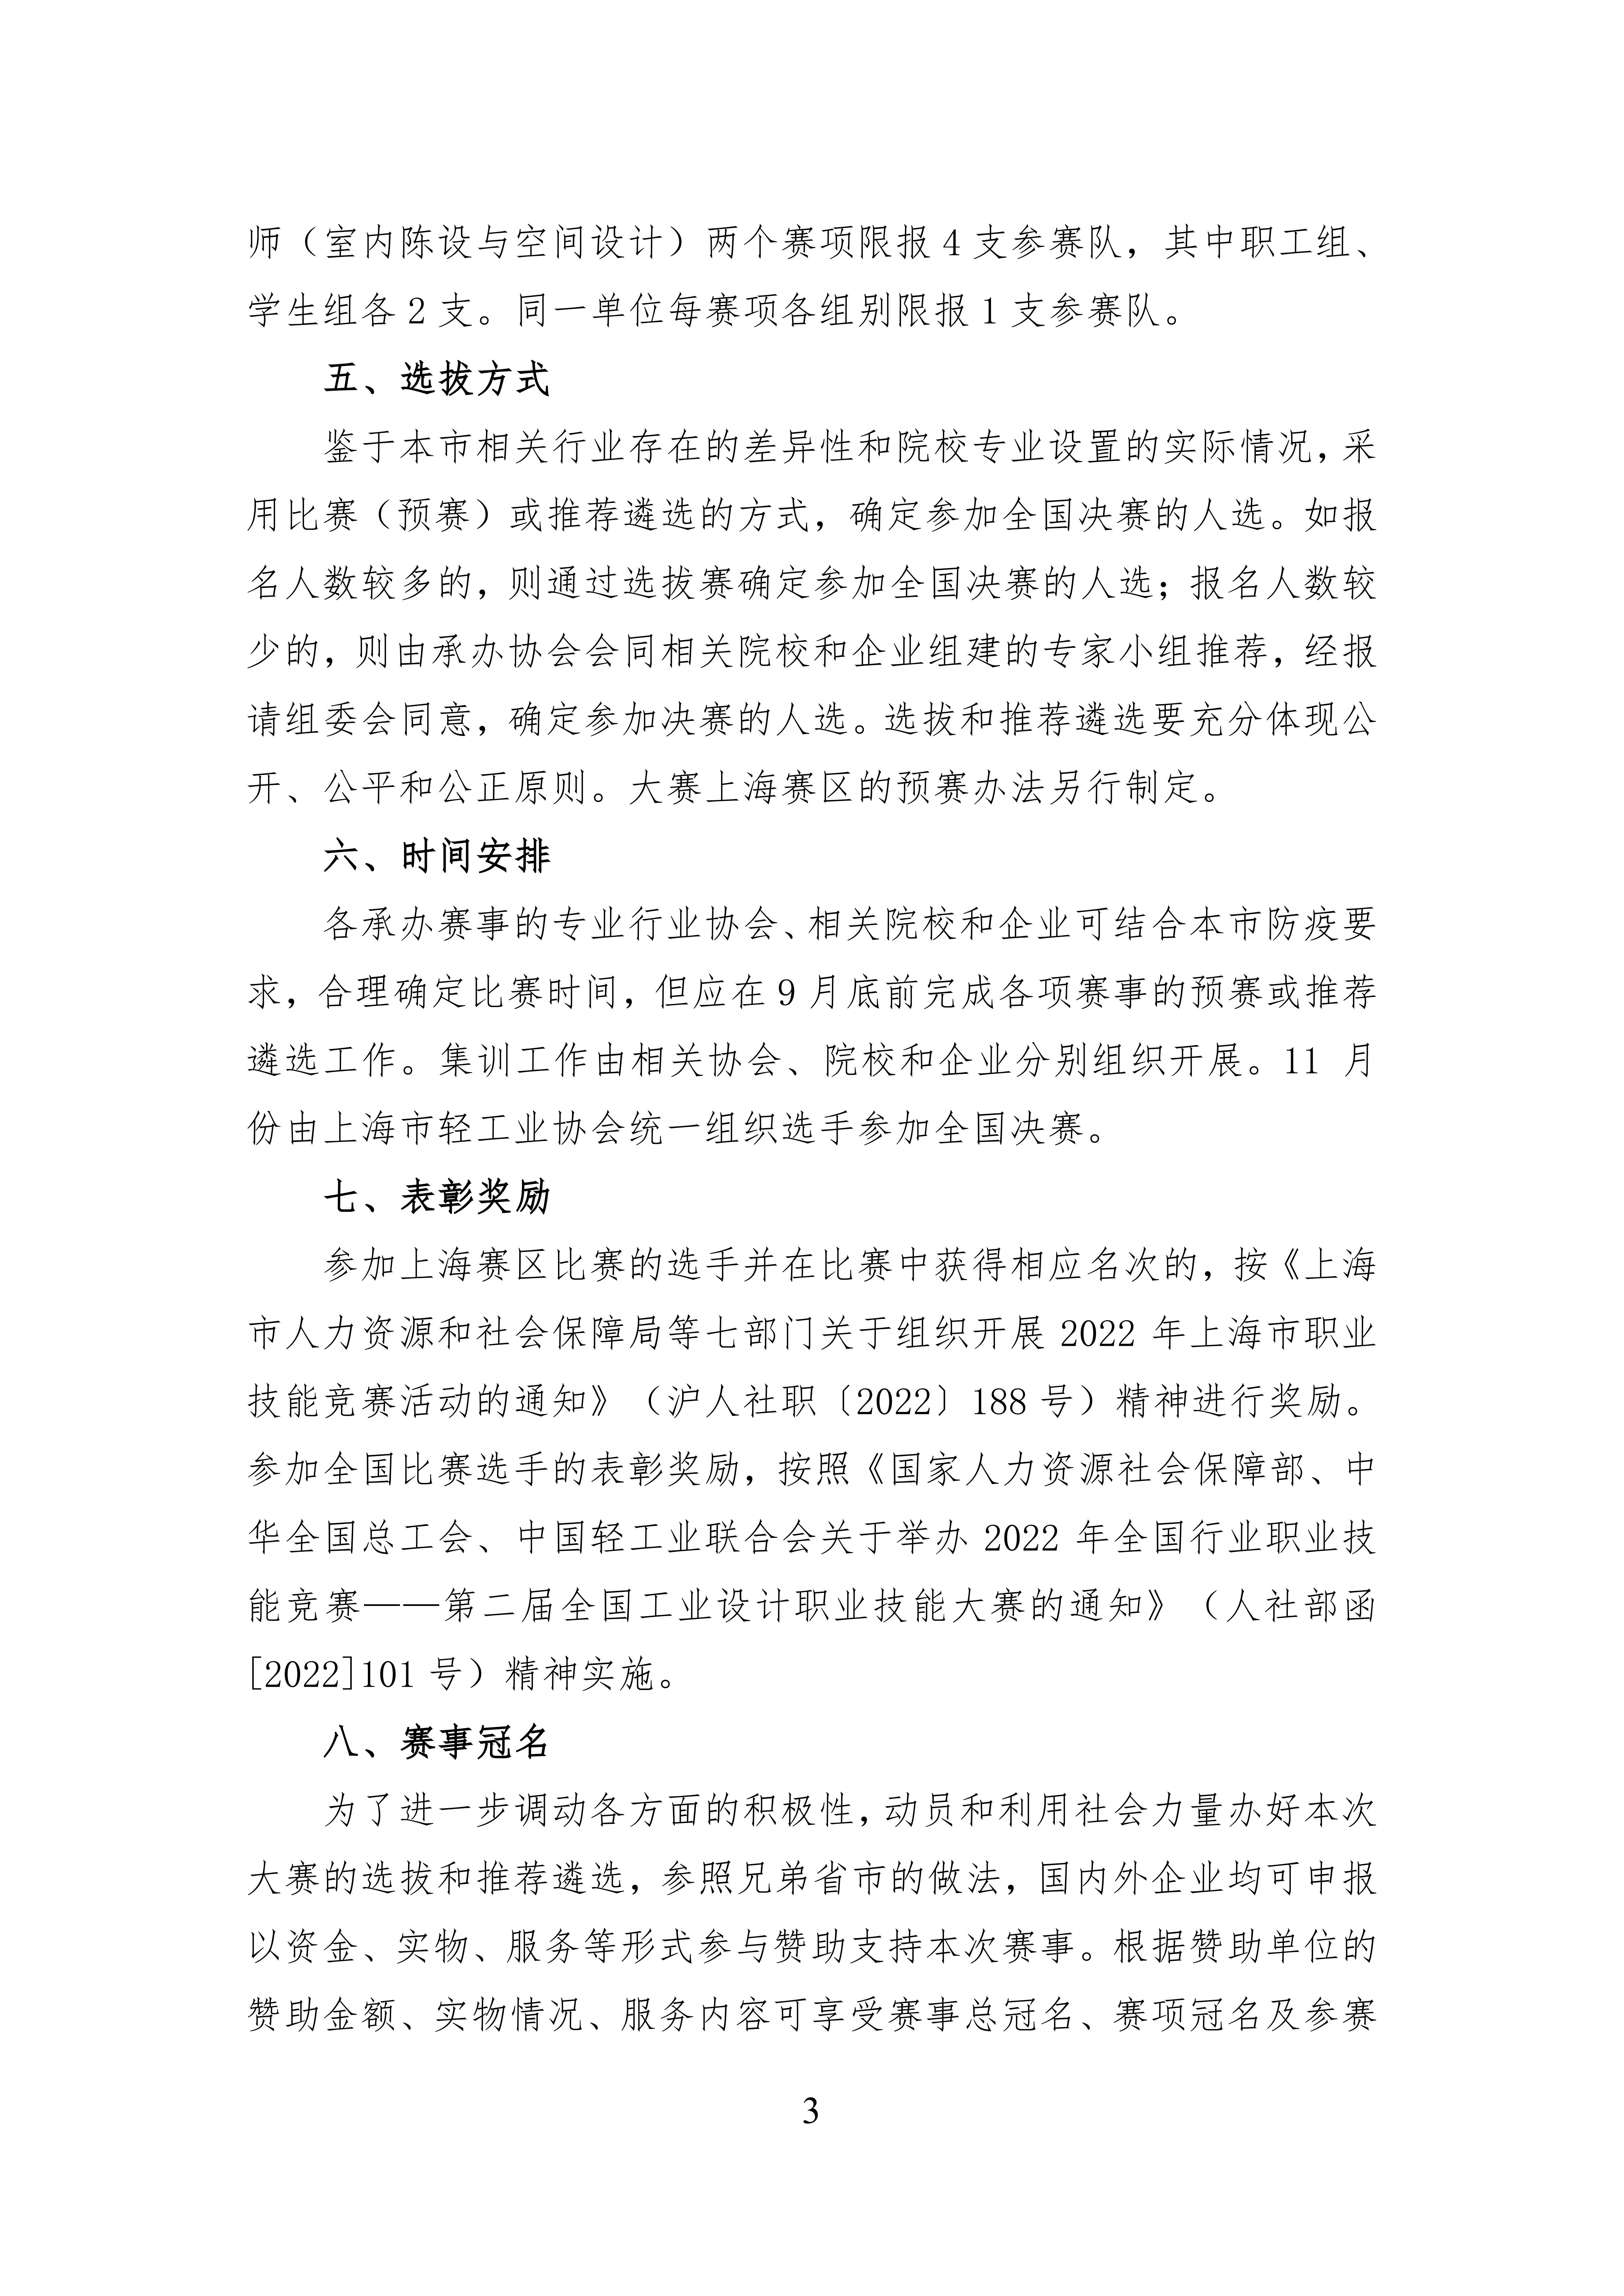 2022.08.25 上海市选拔赛通知_02.jpg